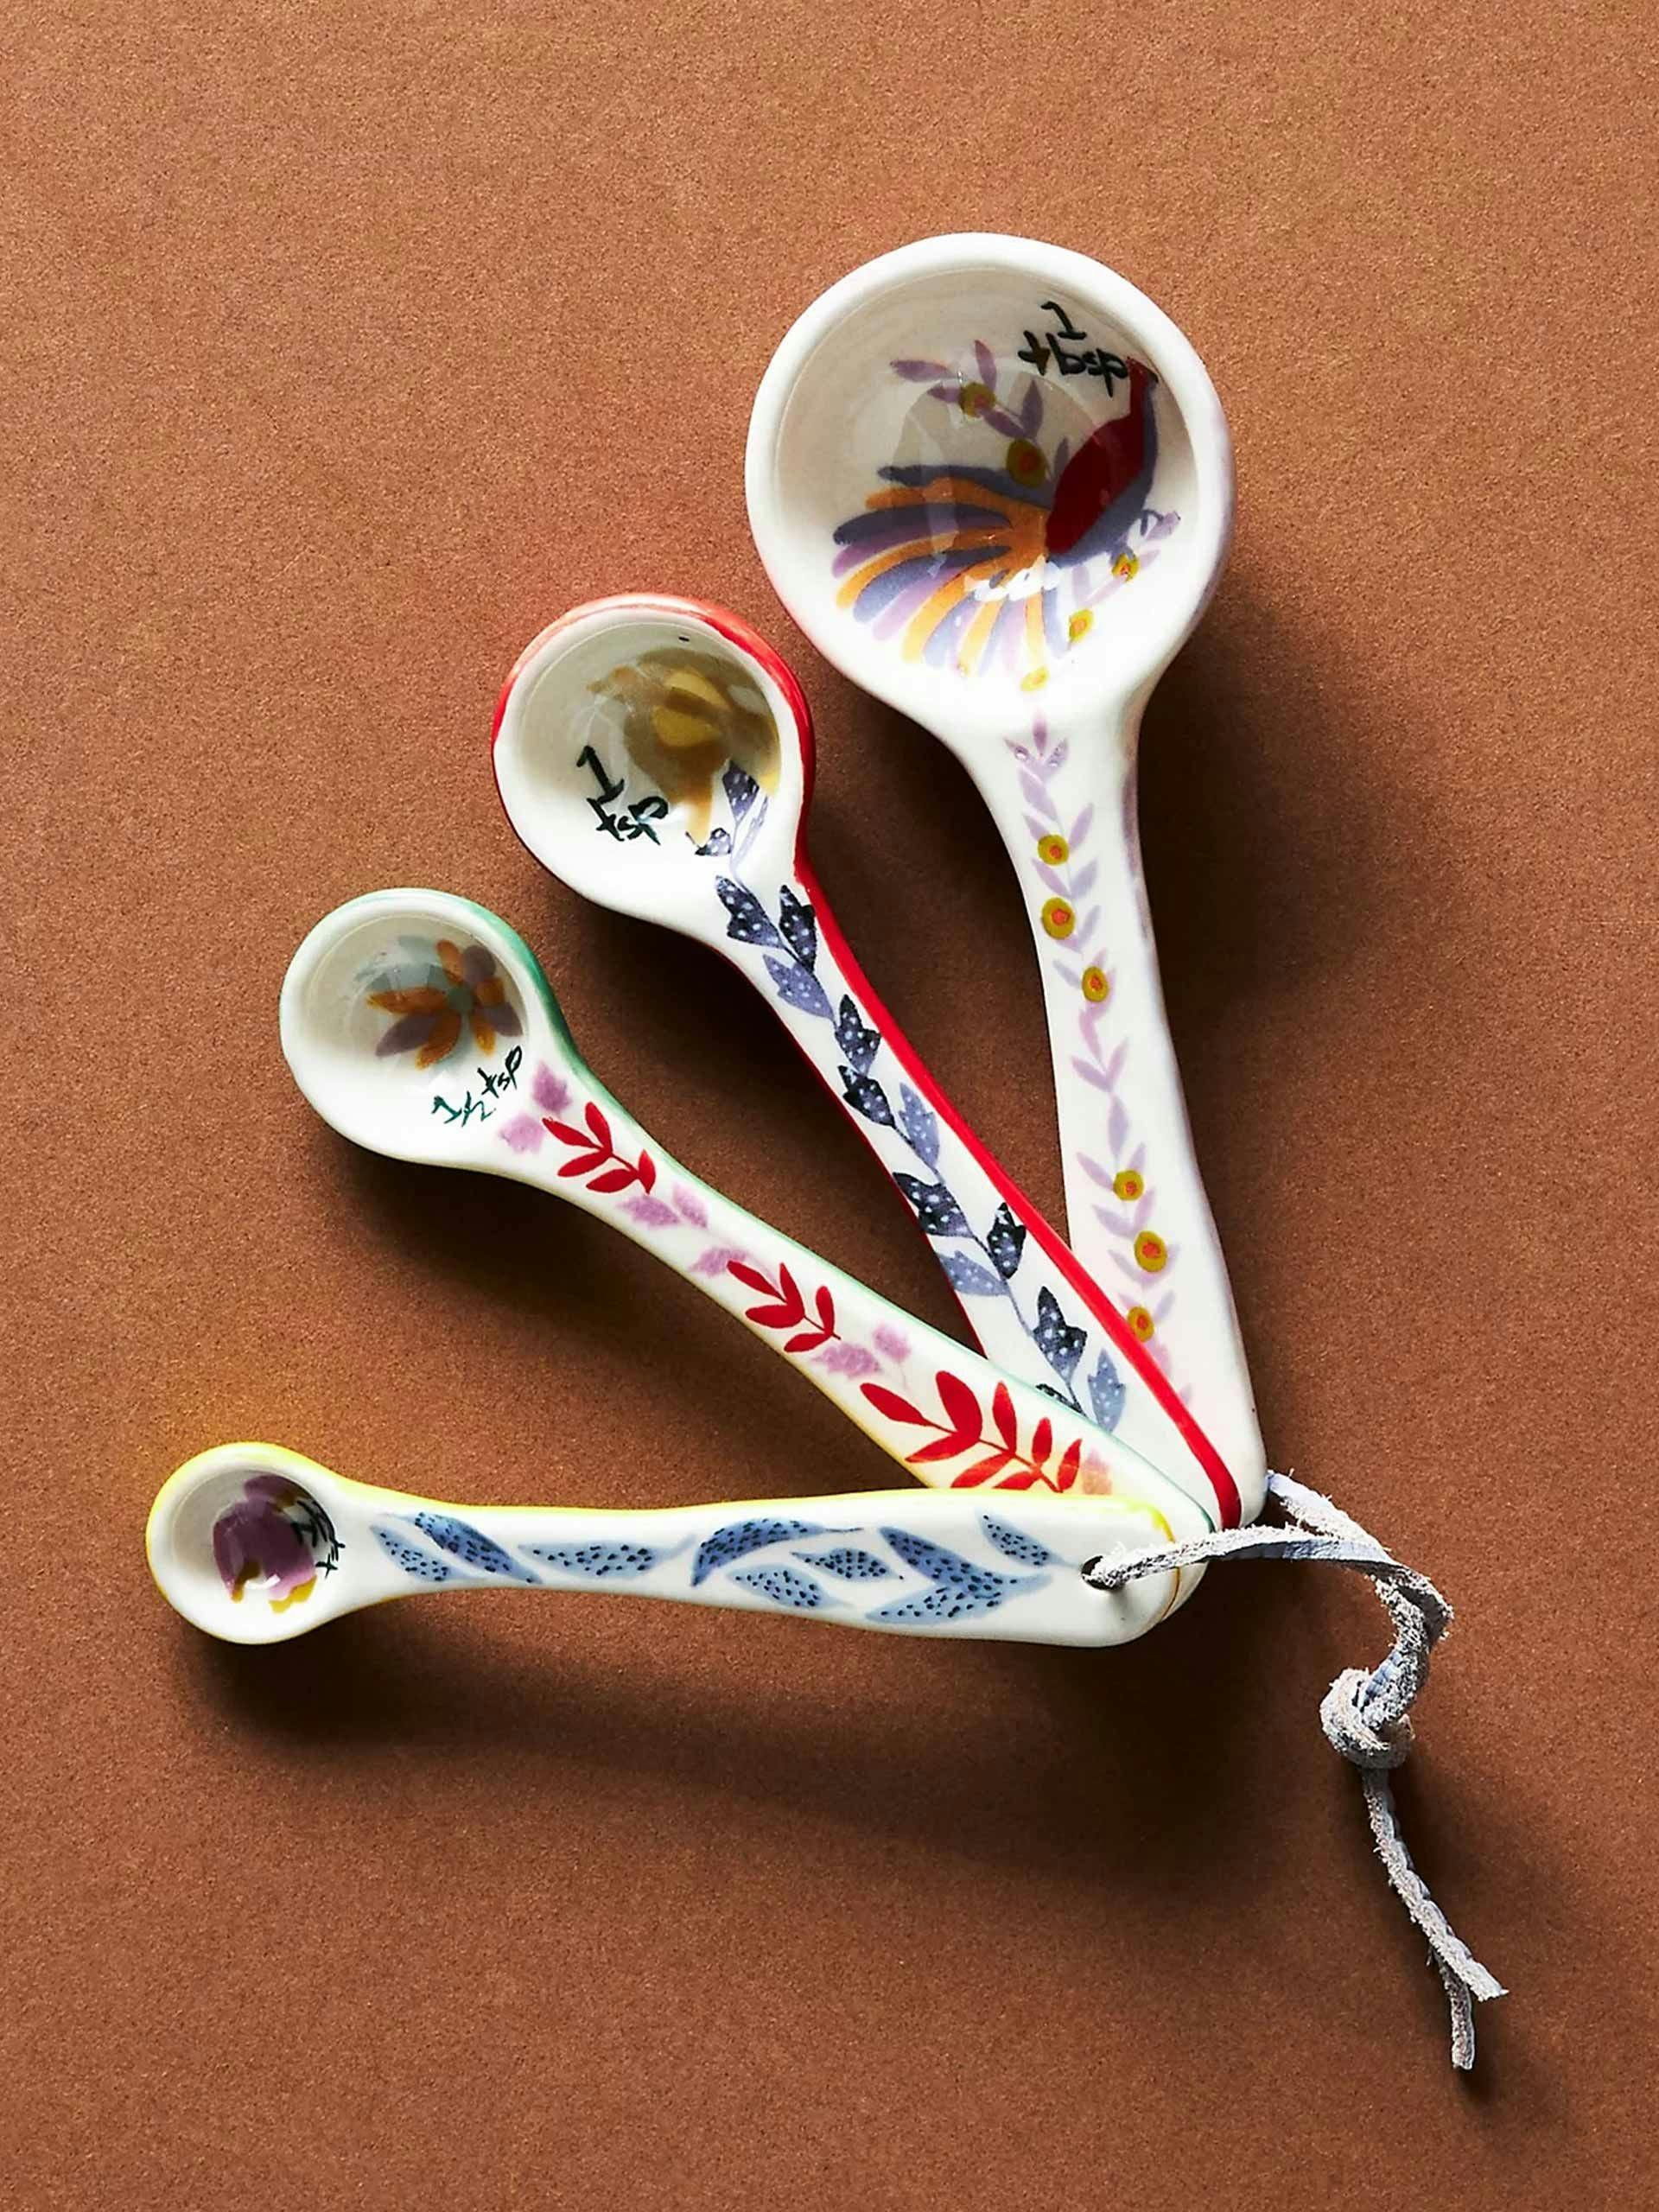 Handpainted measuring spoons